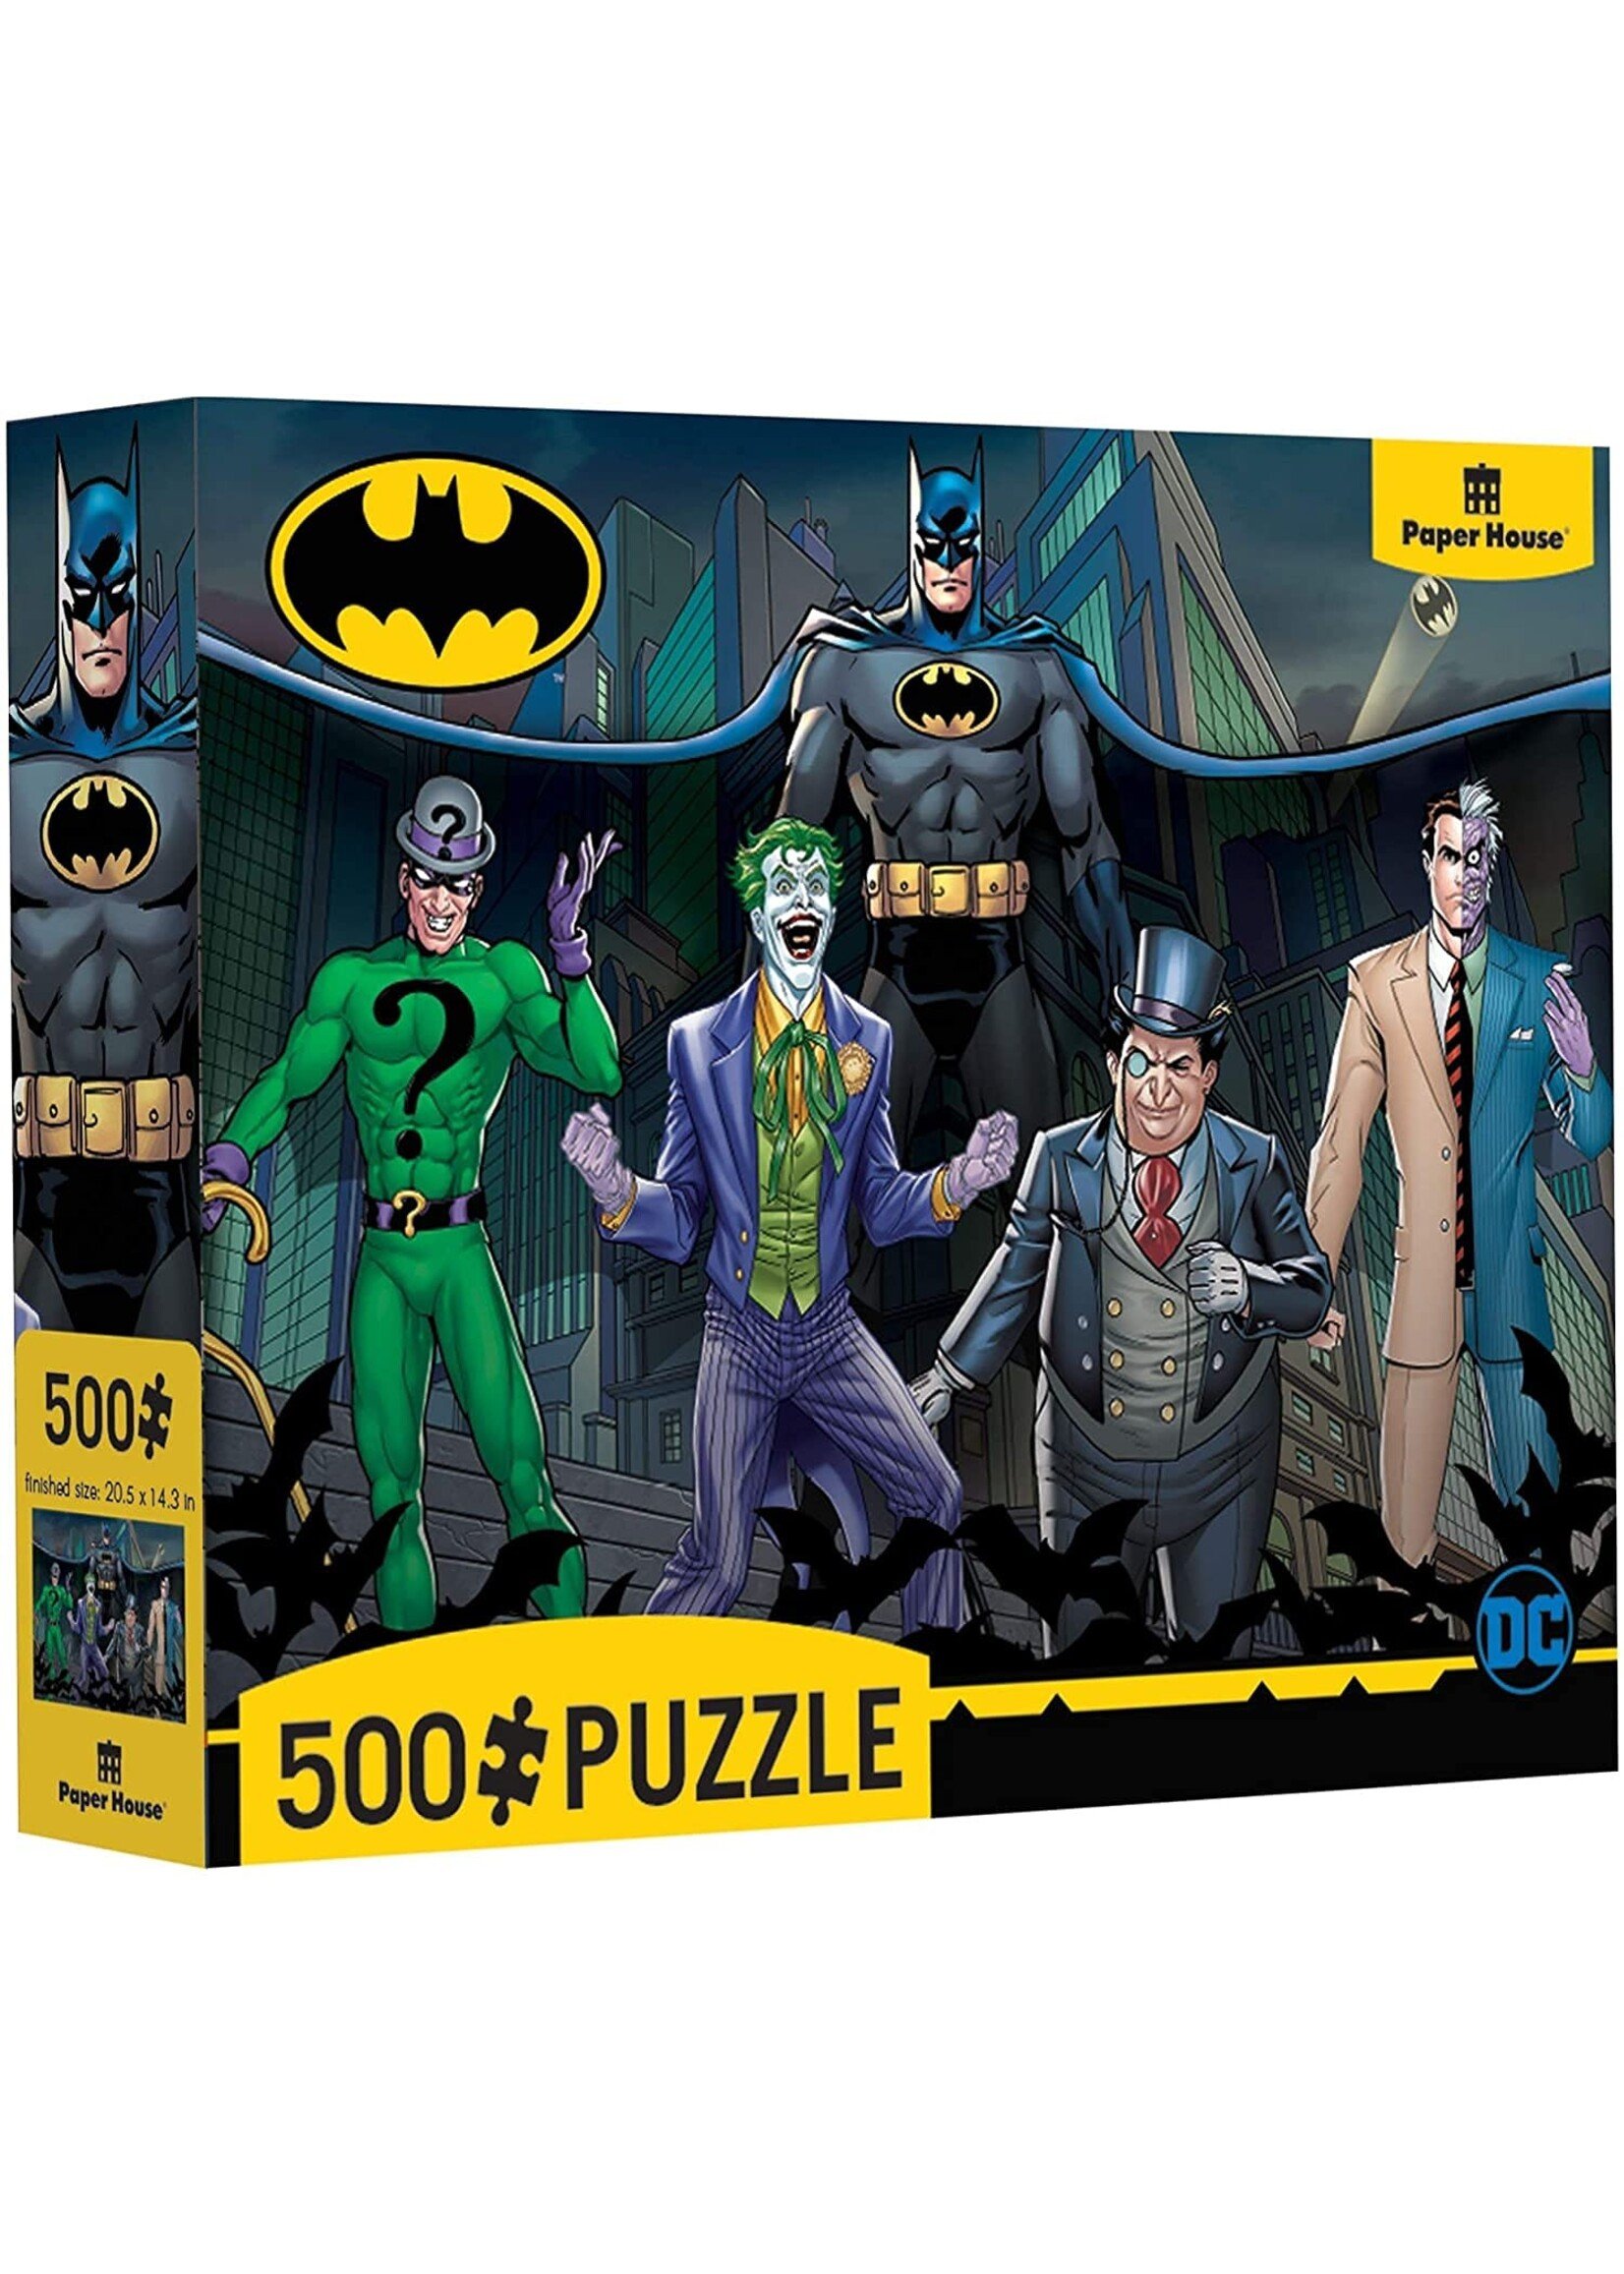 Paper house productions Batman and Villains 500 Piece Jigsaw Puzzle